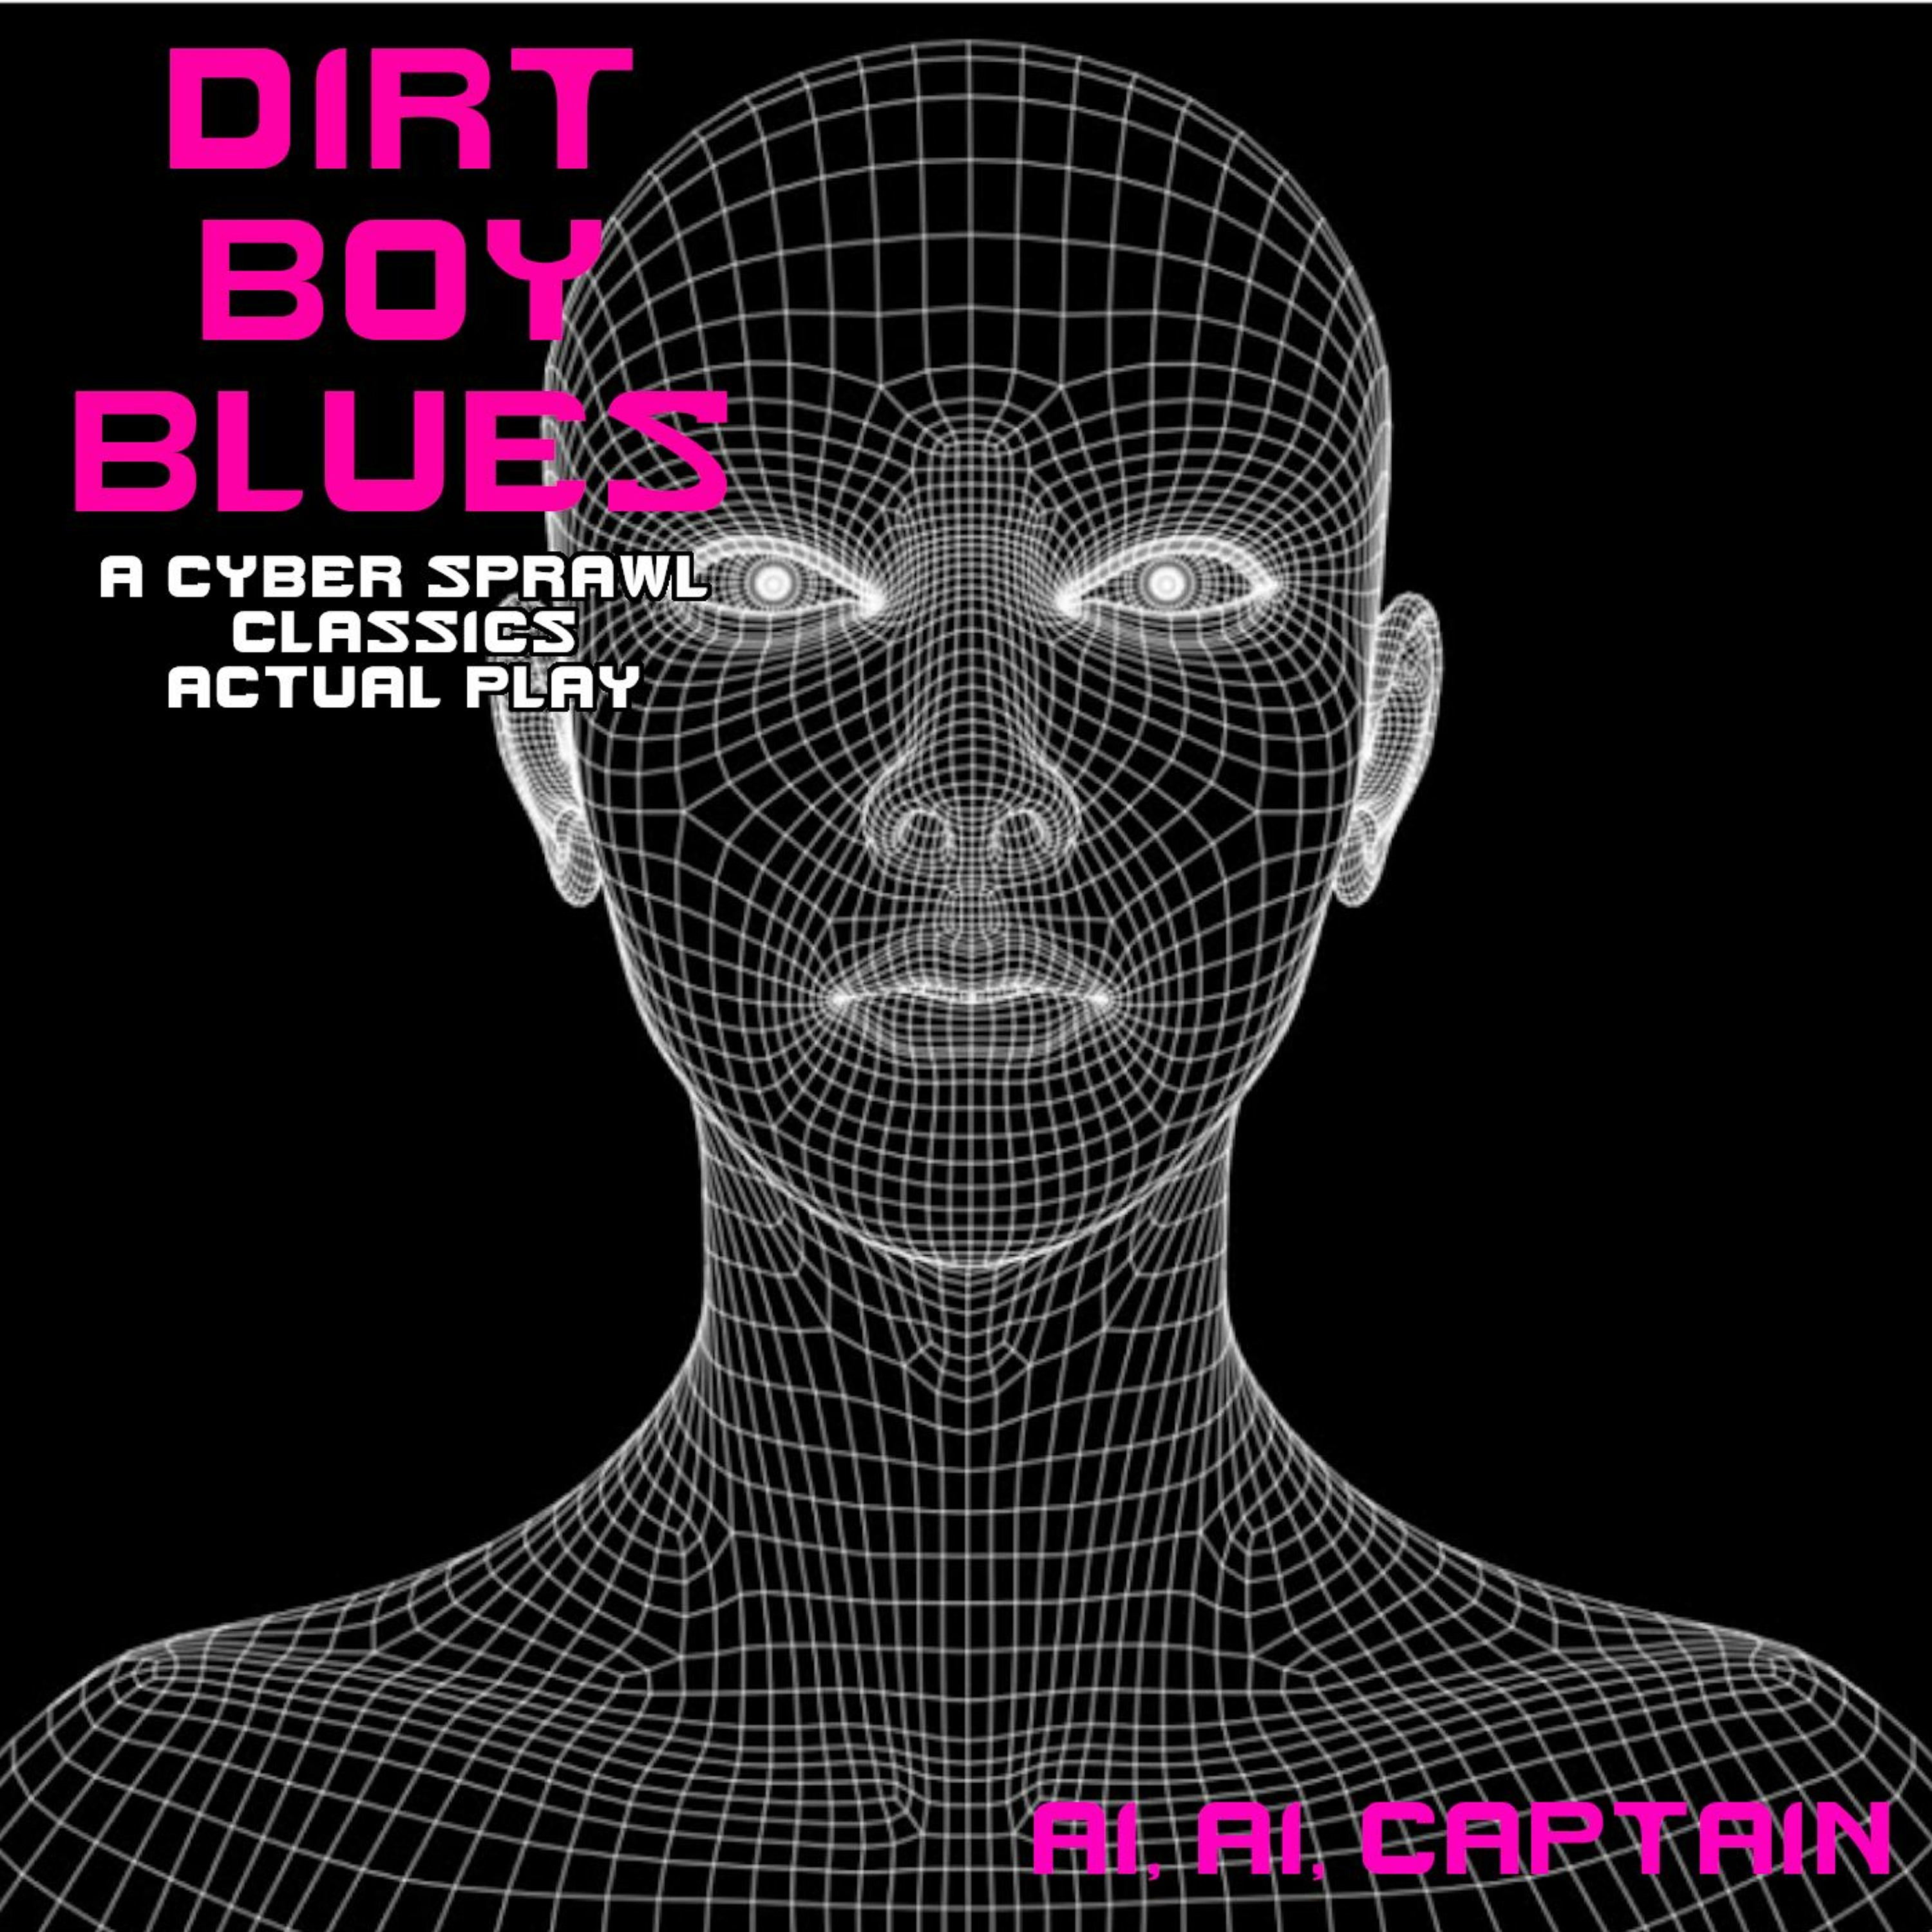 Dirt Boy Blues 02 - A.I. A.I. Captain (DCC RPG Actual Play)